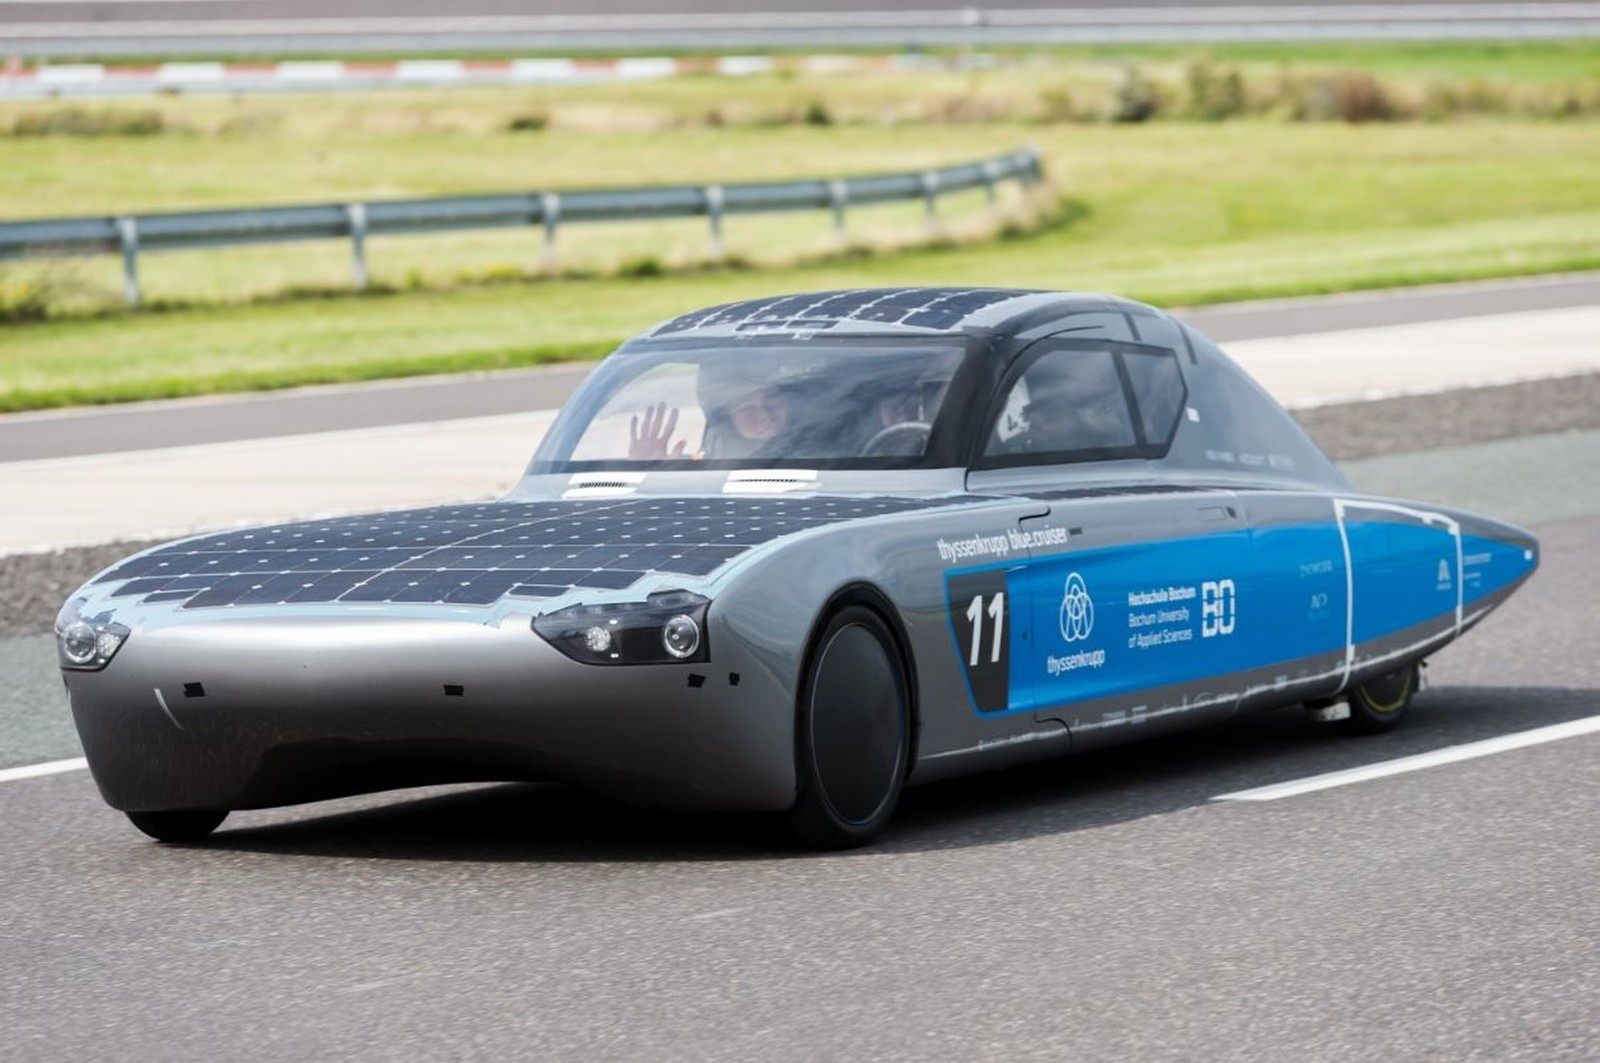 Bei der World Solar Challenge in Australien, dem härtesten Rennen der Welt für Solarfahrzeuge, ist der 'Thyssenkrupp Blue Cruiser' mit Hirschmann-Traggelenken am Start.